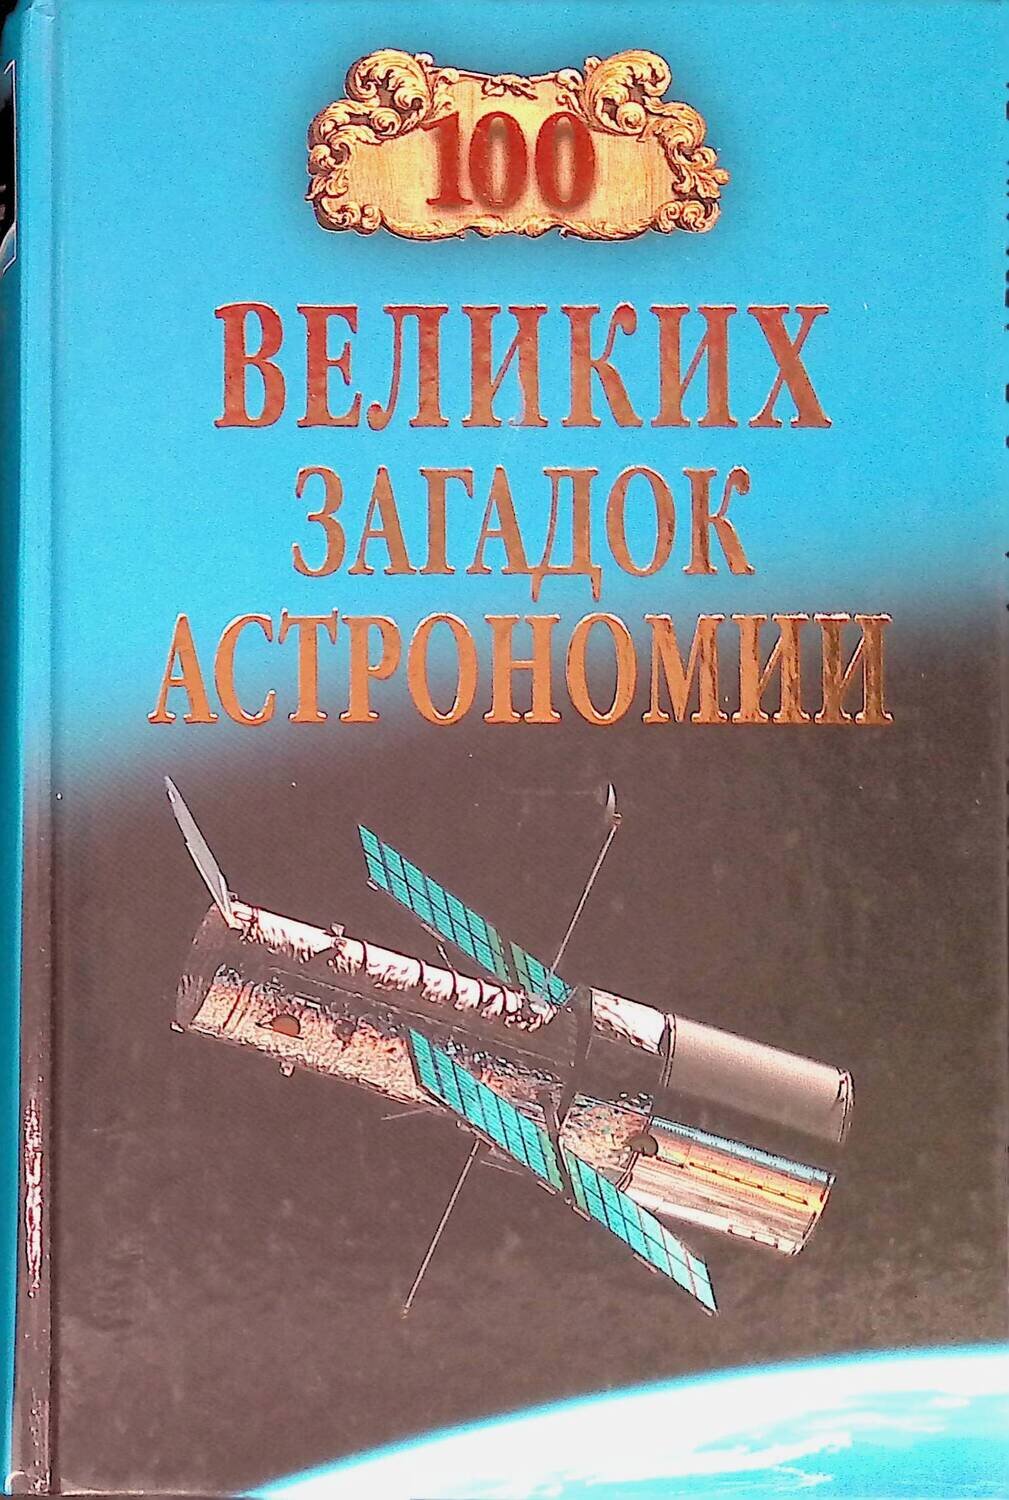 100 великих загадок астрономии; Александр Викторович Волков